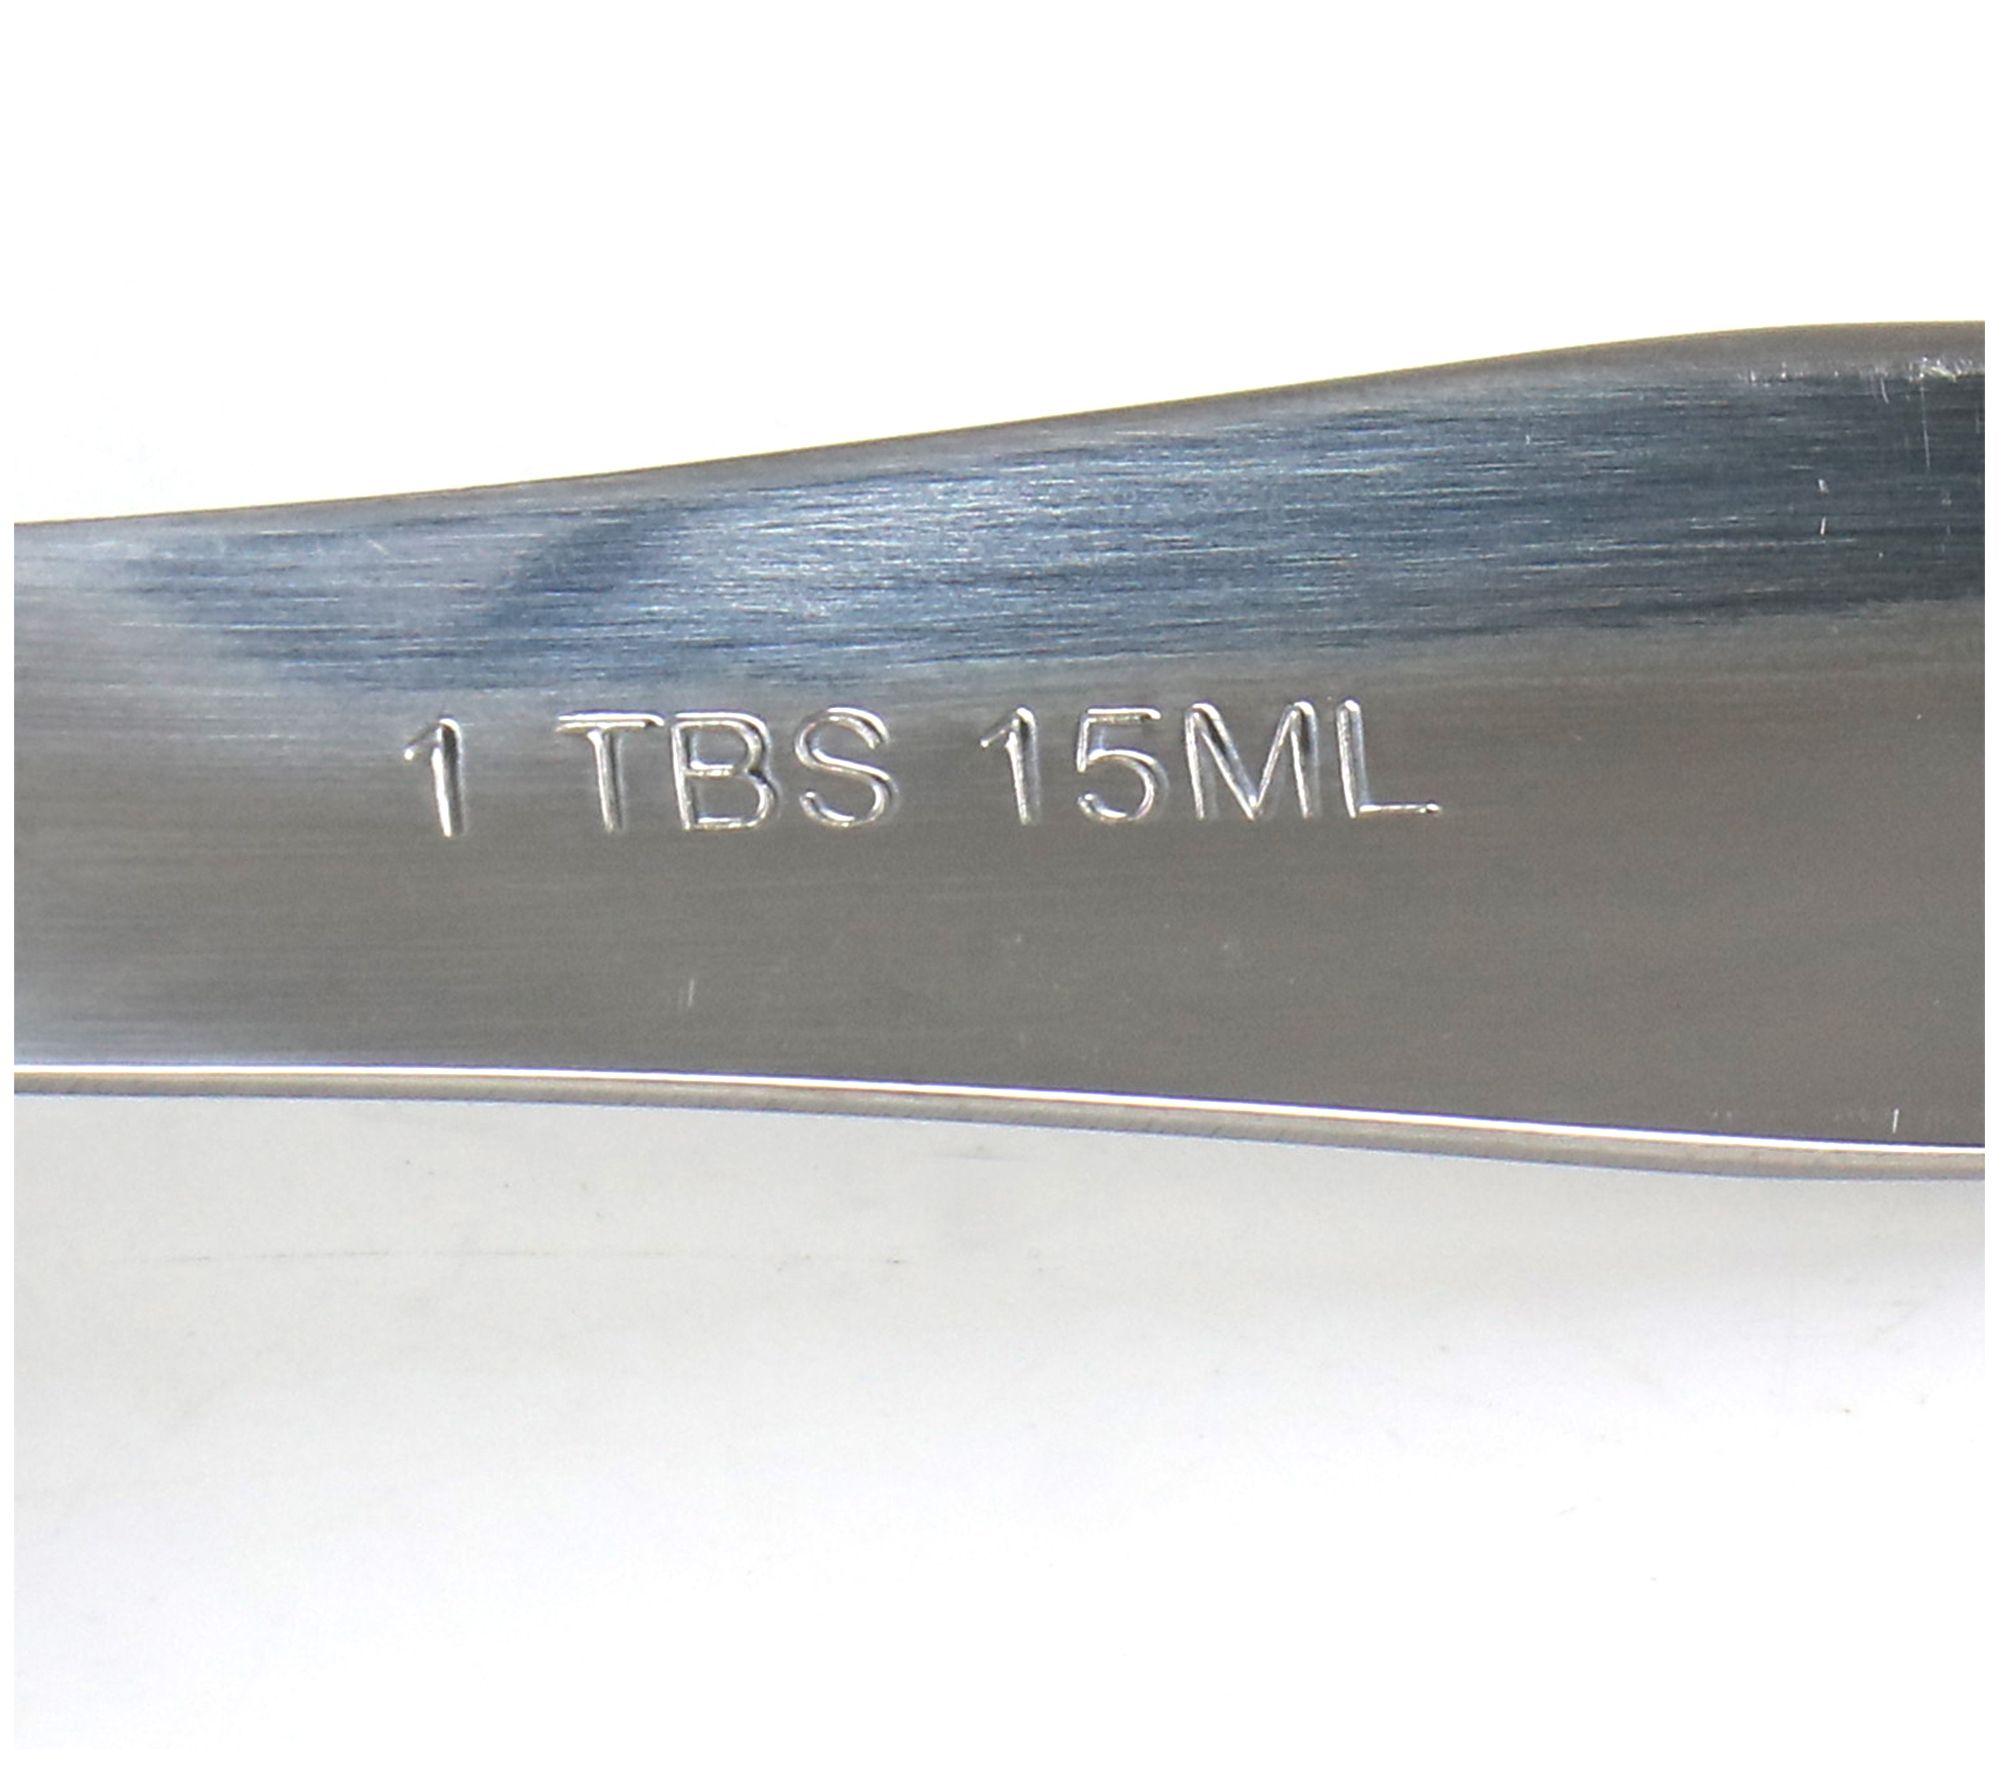 Oster Baldwyn 4 Piece Stainless Steel Measuring Spoon Set